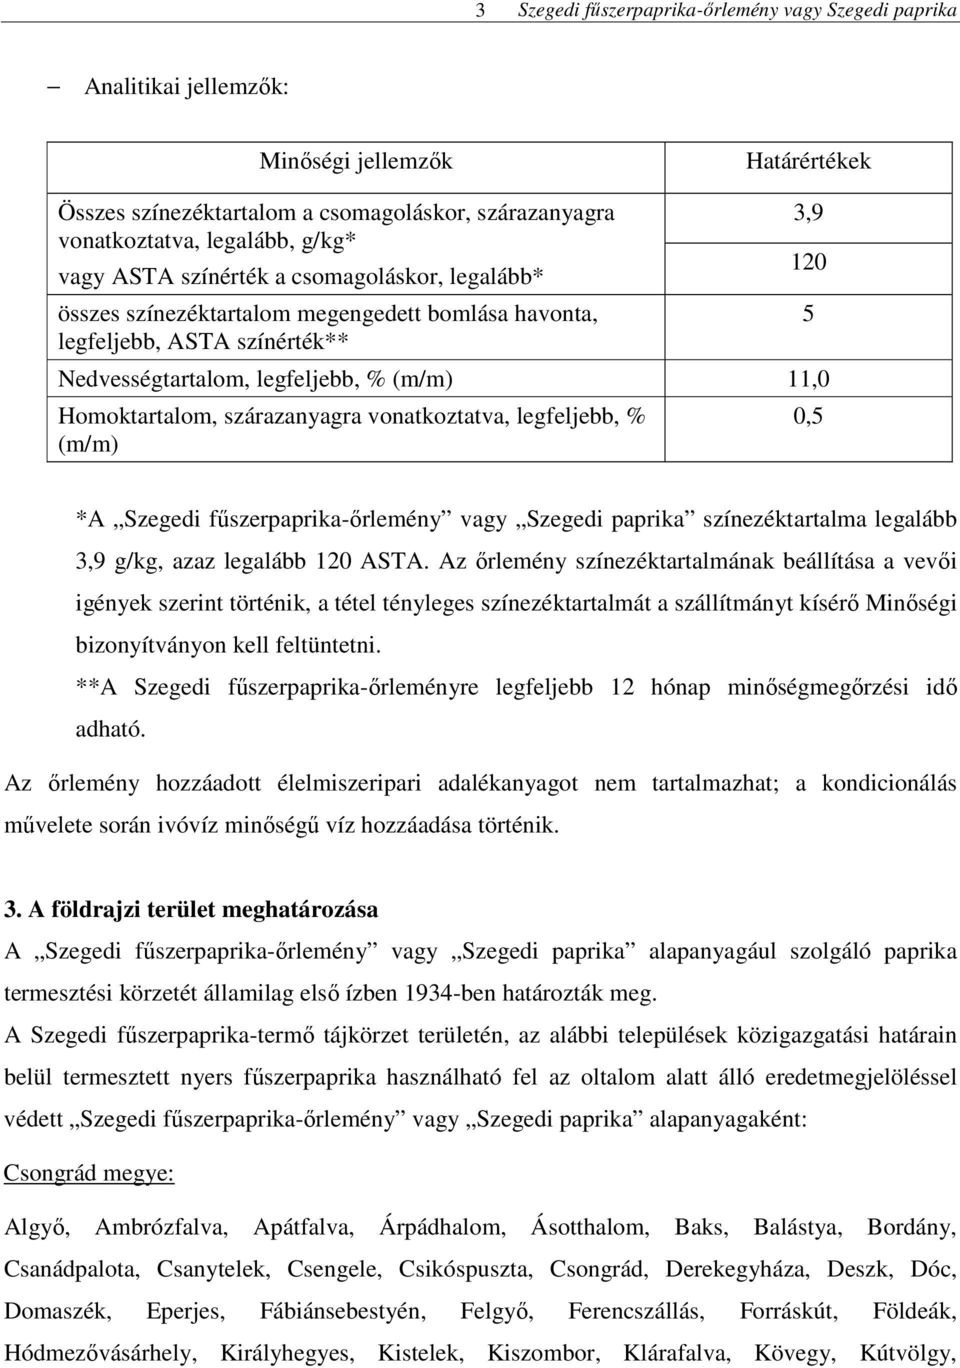 Szegedi fűszerpaprika-őrlemény vagy Szegedi paprika színezéktartalma legalább 3,9 g/kg, azaz legalább 120 ASTA.